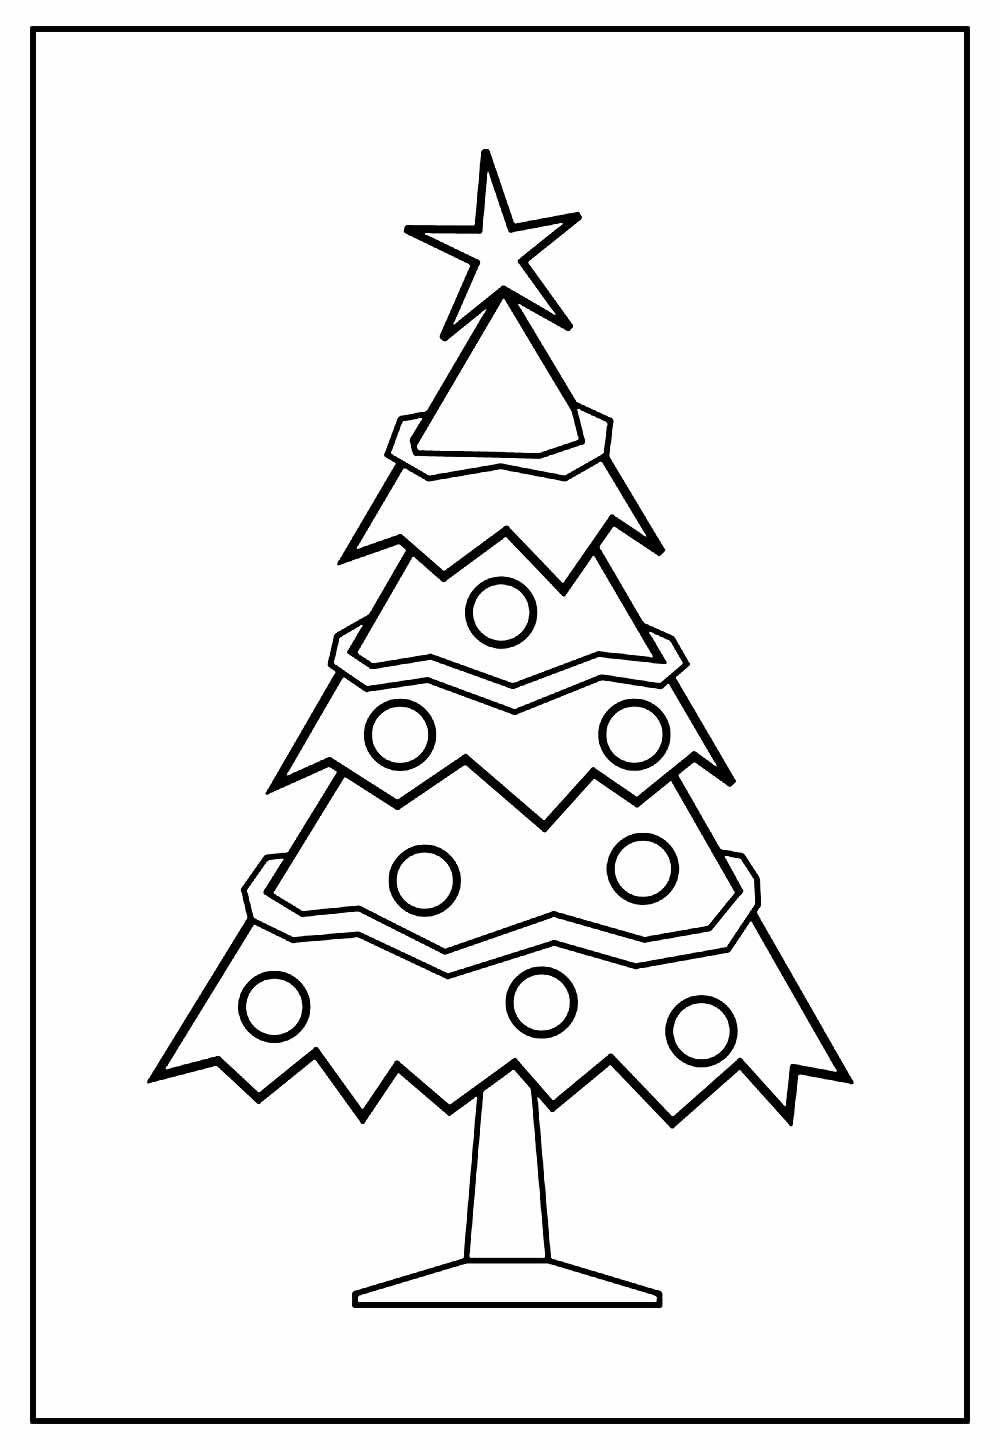 Desenho para imprimir de Árvore de Natal